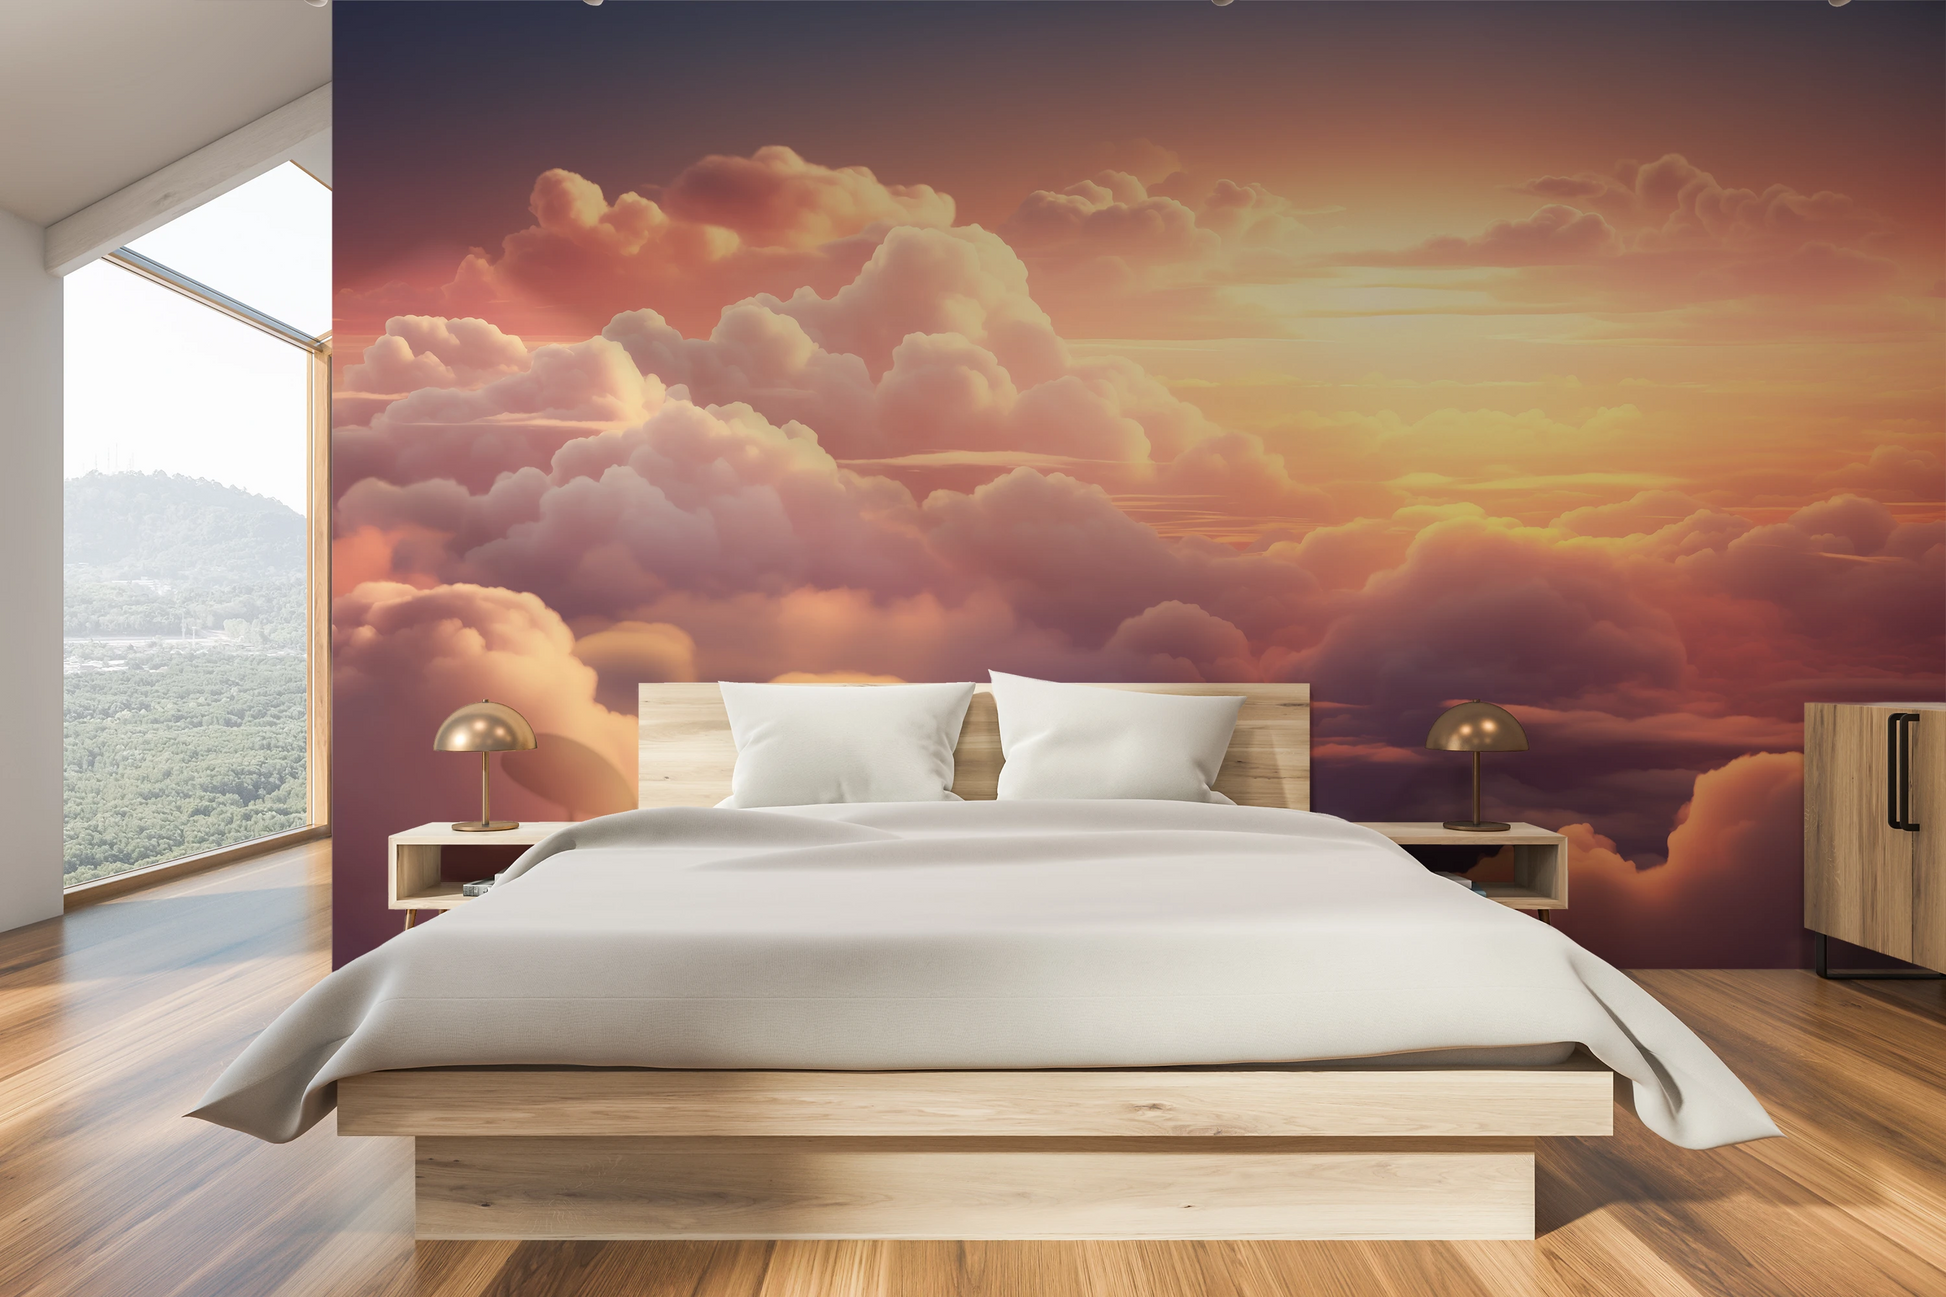 Wzór fototapety o nazwie Azure Dream pokazanej w kontekście pomieszczenia.